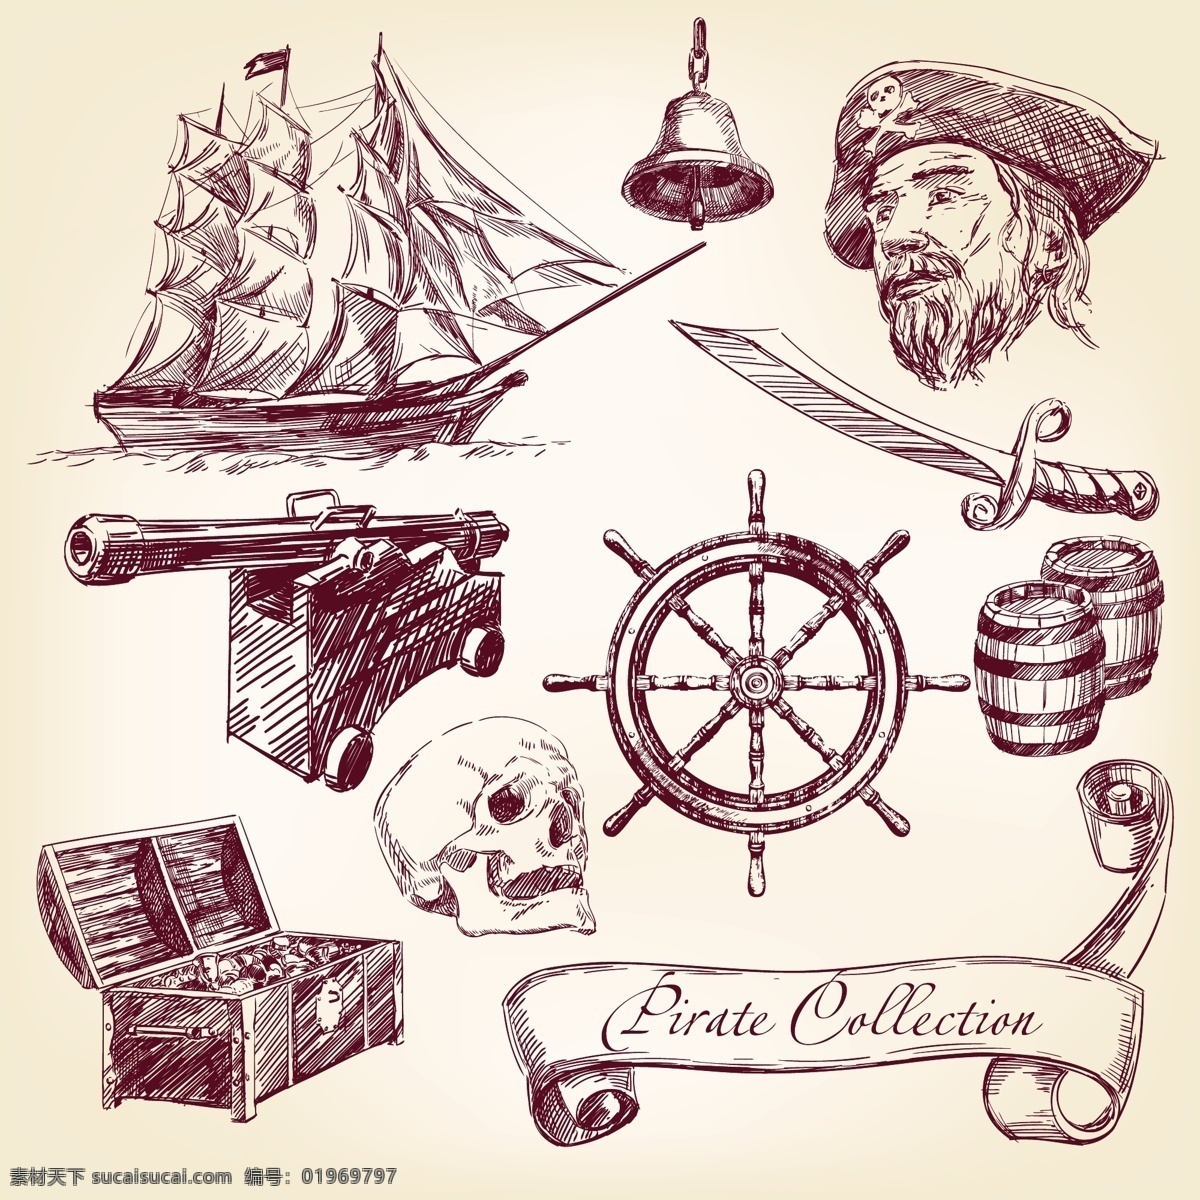 海盗 人物 海盗船 武器 海盗人物 海盗头像 矢量图 矢量人物